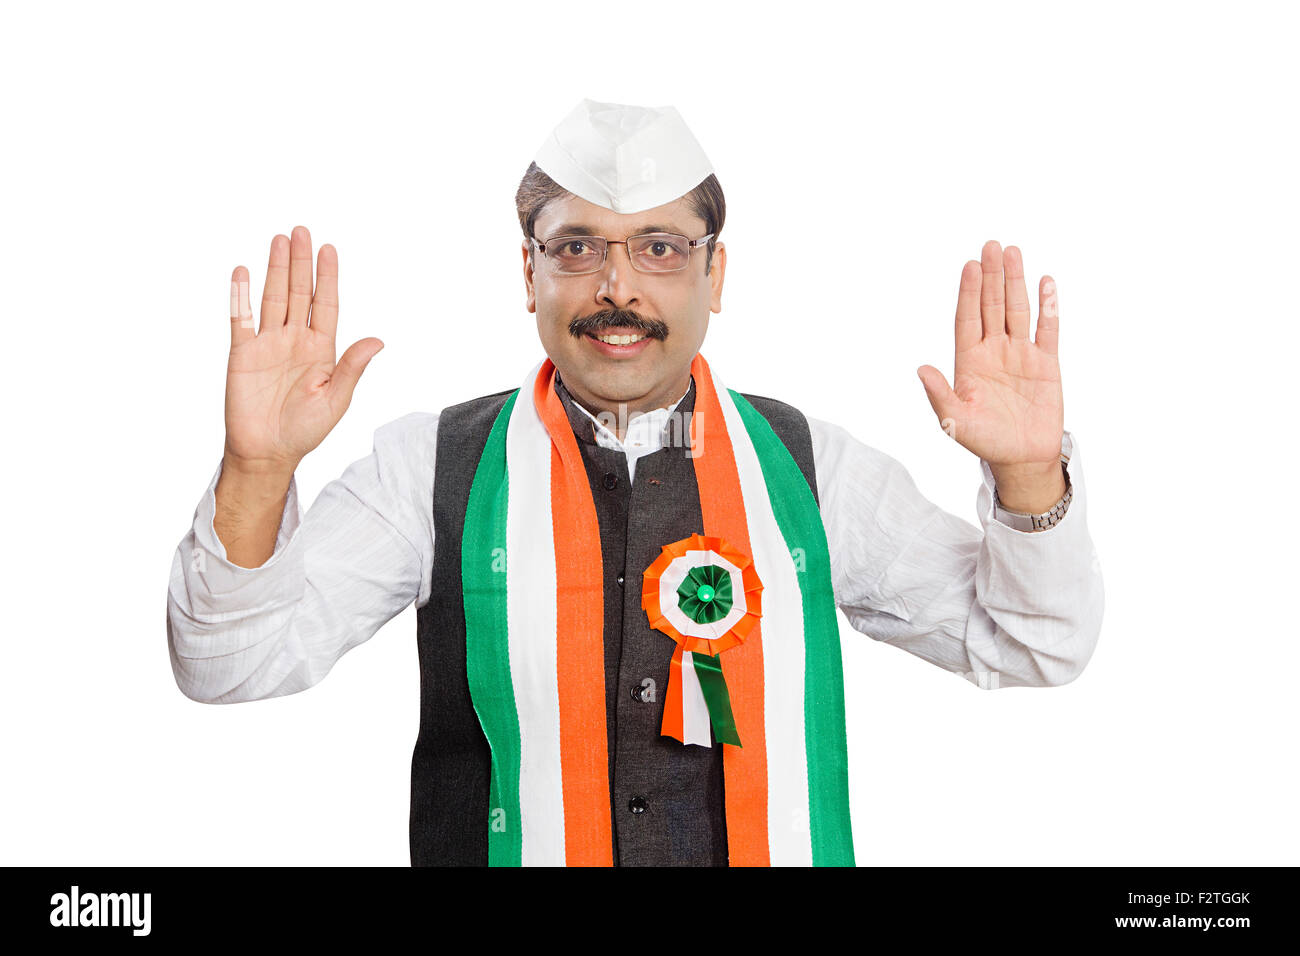 1 adultes indiens montrant des signes avec la main politicien Homme Banque D'Images